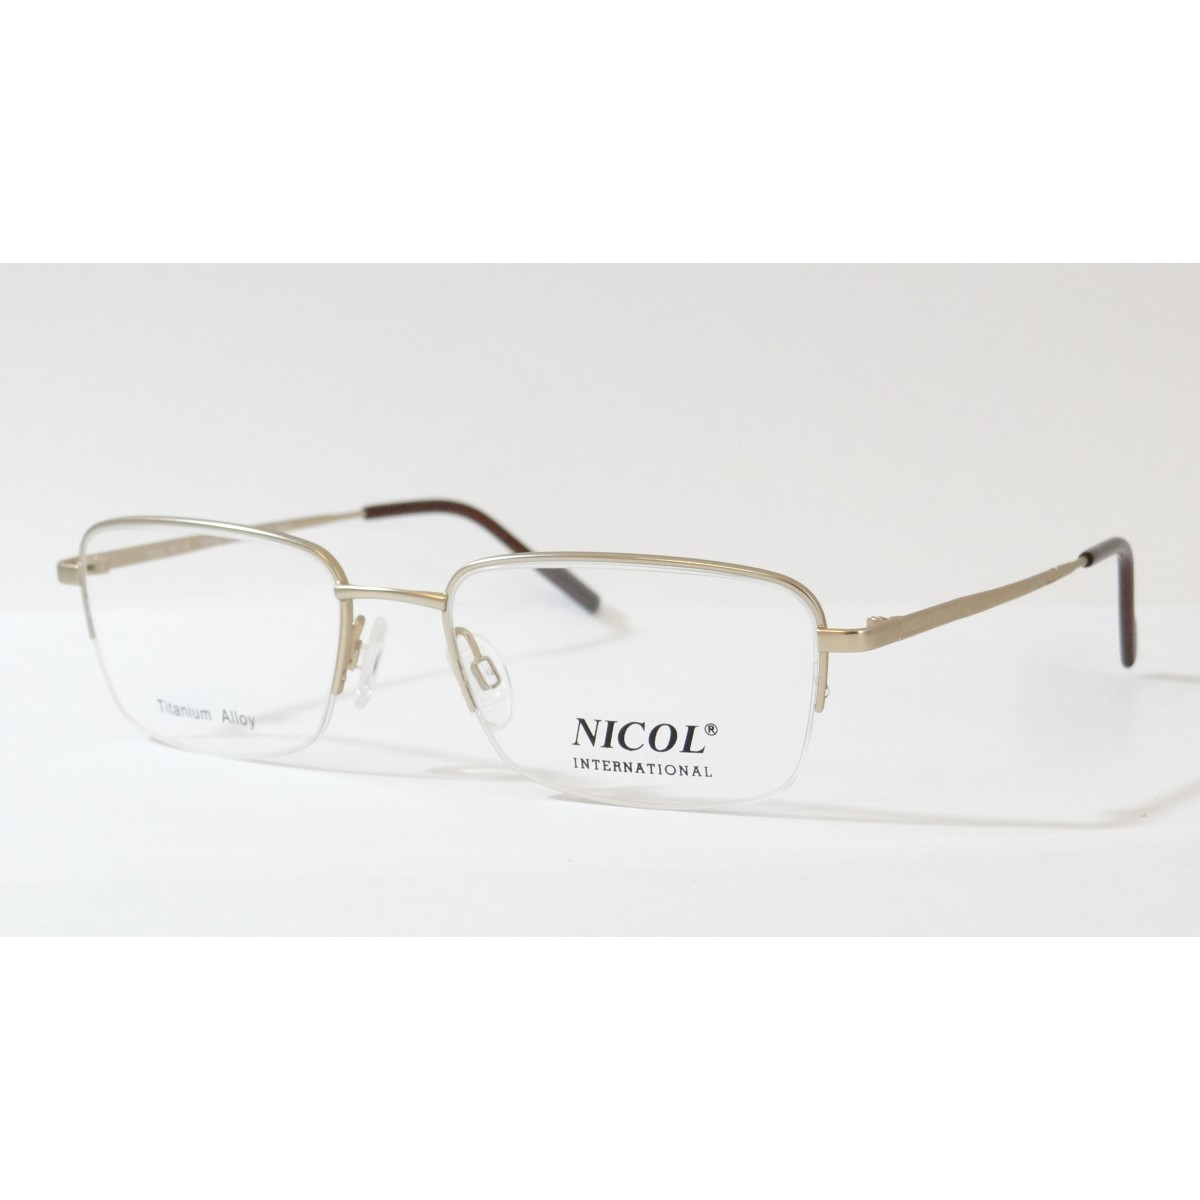 Rame de ochelari Nicol 16240